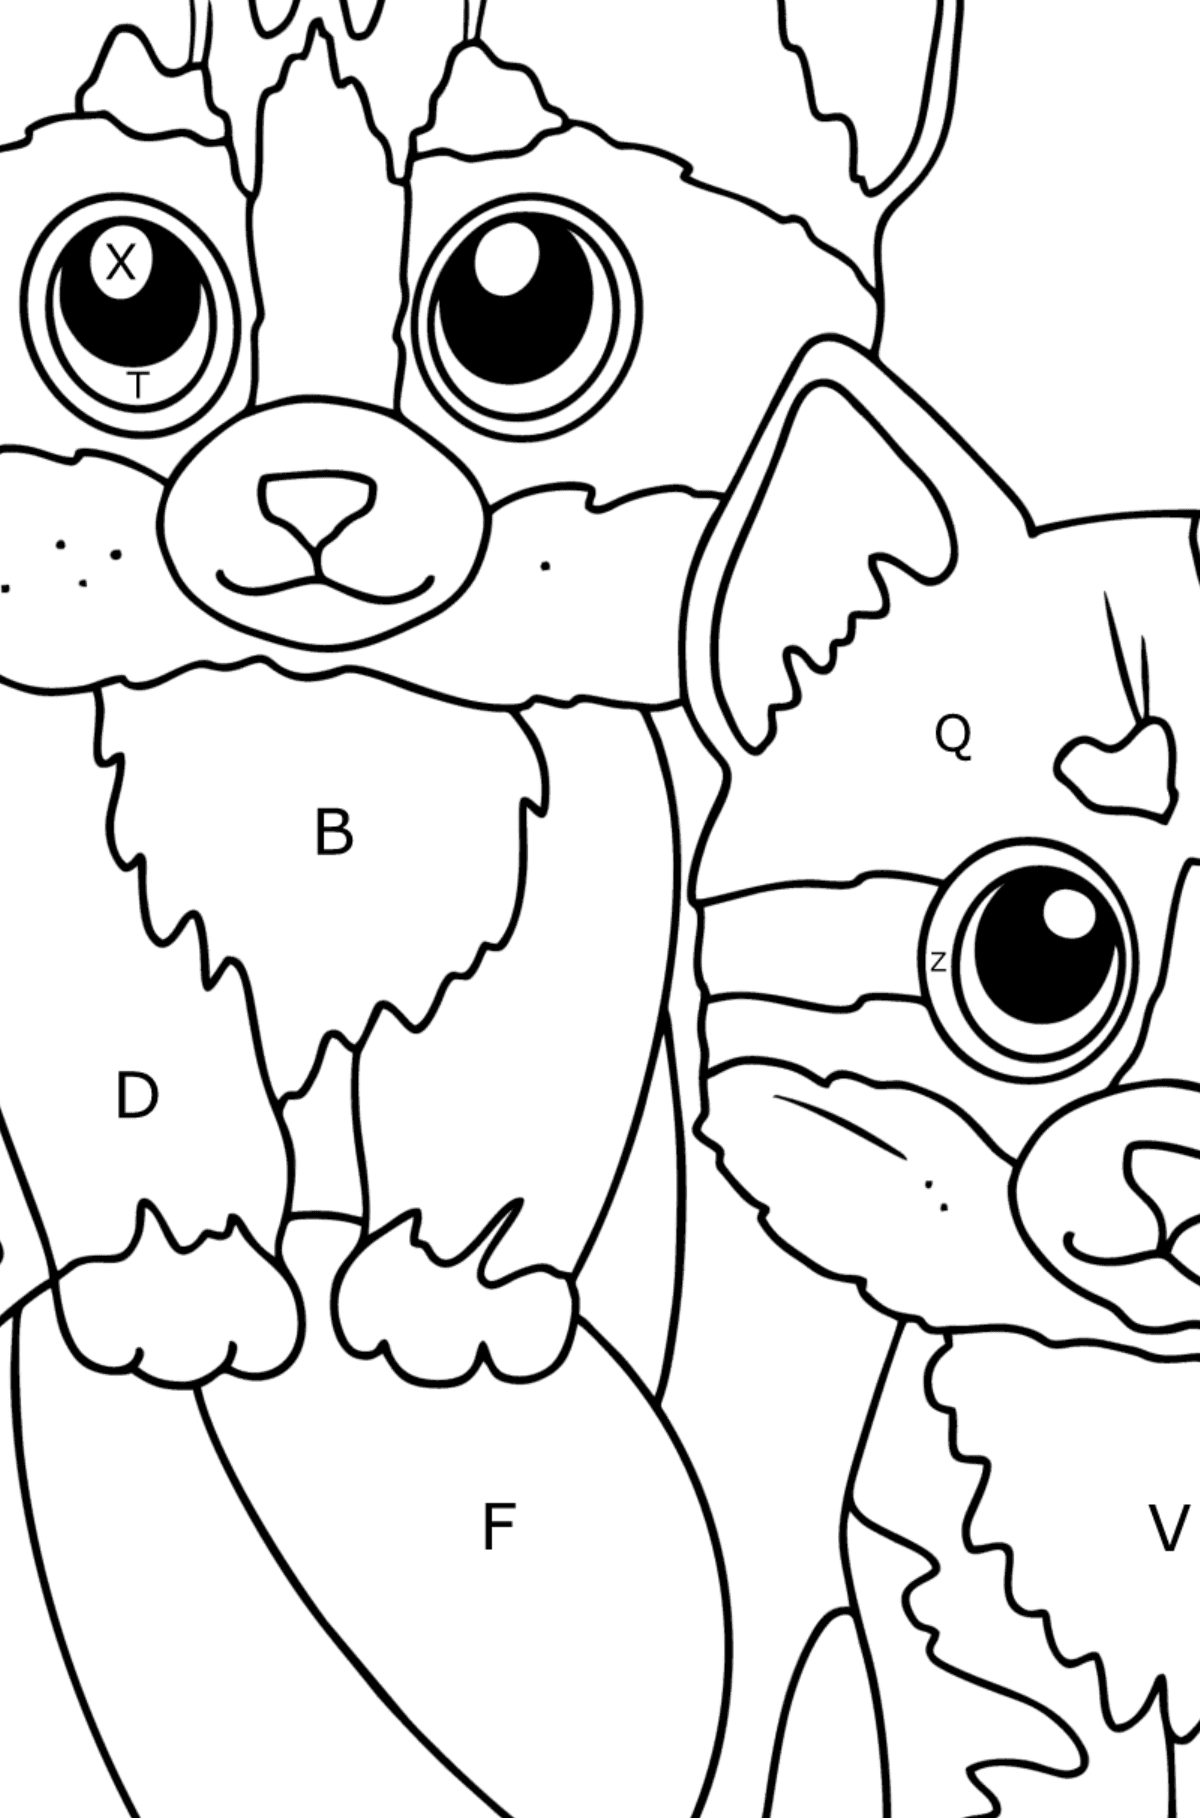 Disegno da colorare di due gattini per bambini - Colorare per lettere per bambini